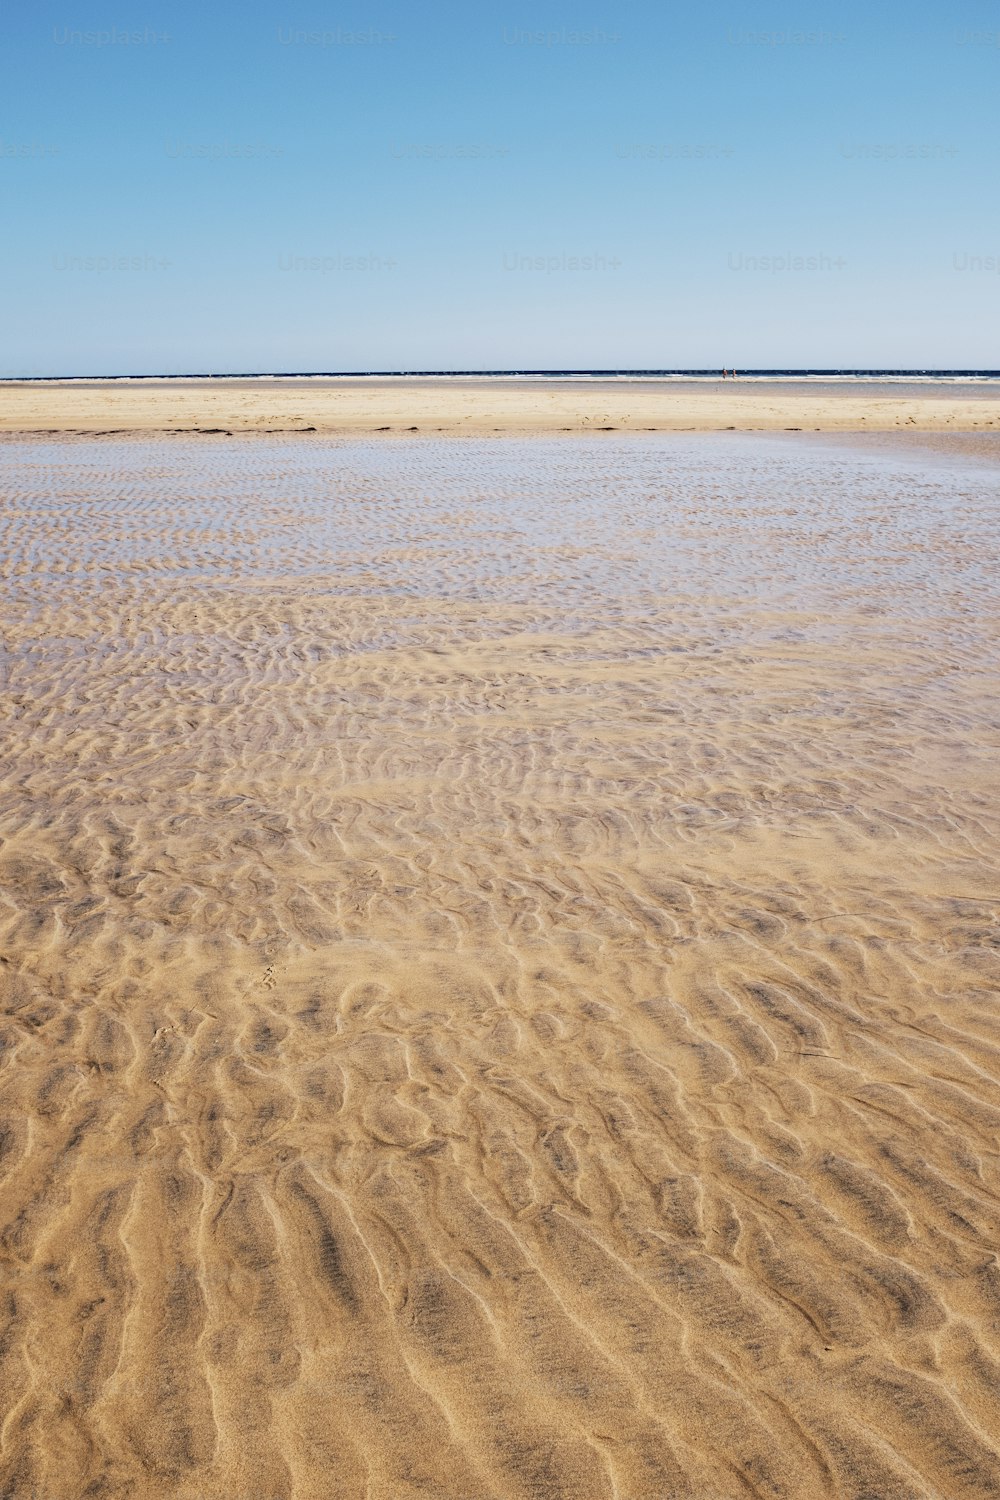 Paysage de sable et de plage avec de l’eau de mer tropicale propre et transparente. Ciel bleu en arrière-plan. Concept de voyage d’été, vacances, vacances, lieu pittoresque